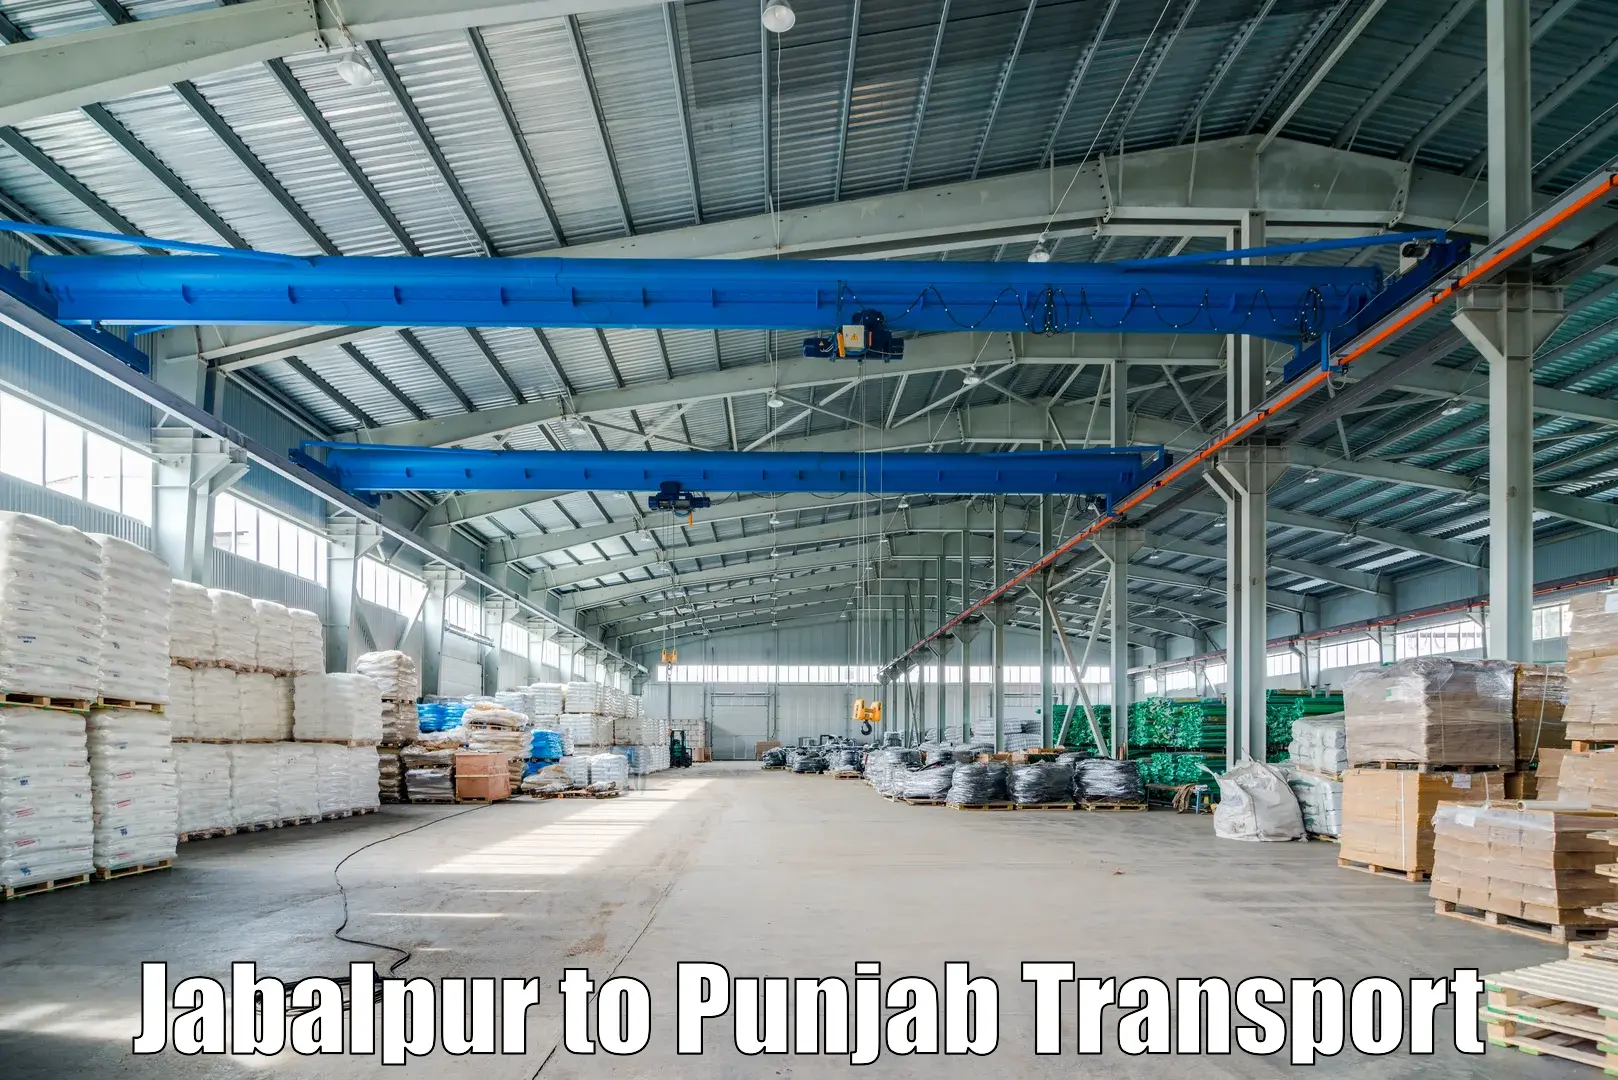 Parcel transport services Jabalpur to Patiala